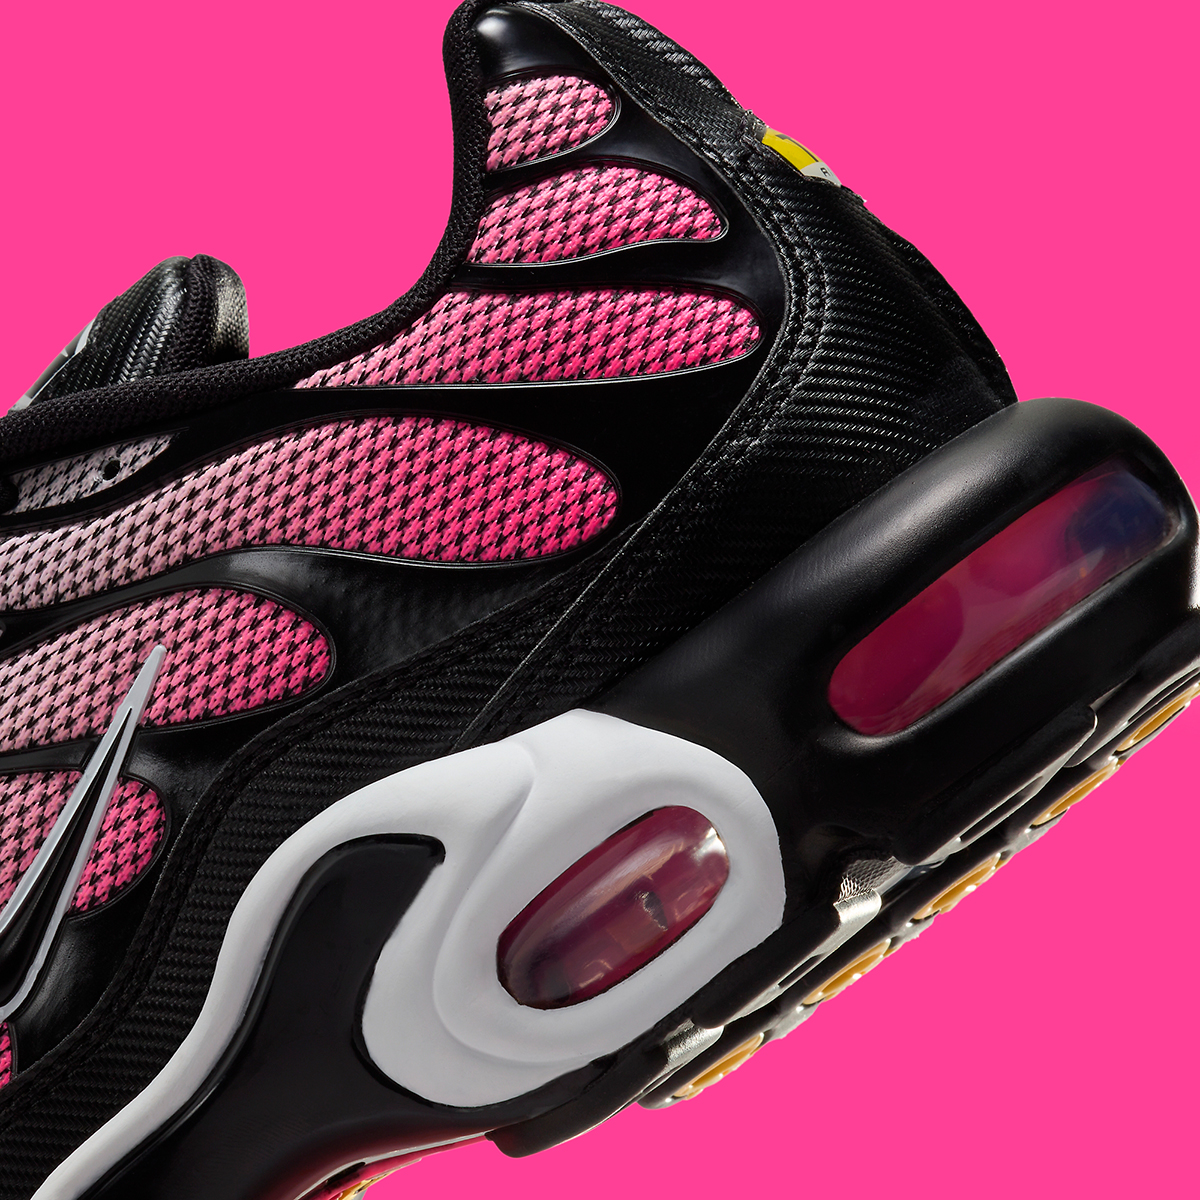 nike lady air pegasus+ 29 running shoes for women Pink Black Hf3837 600 3